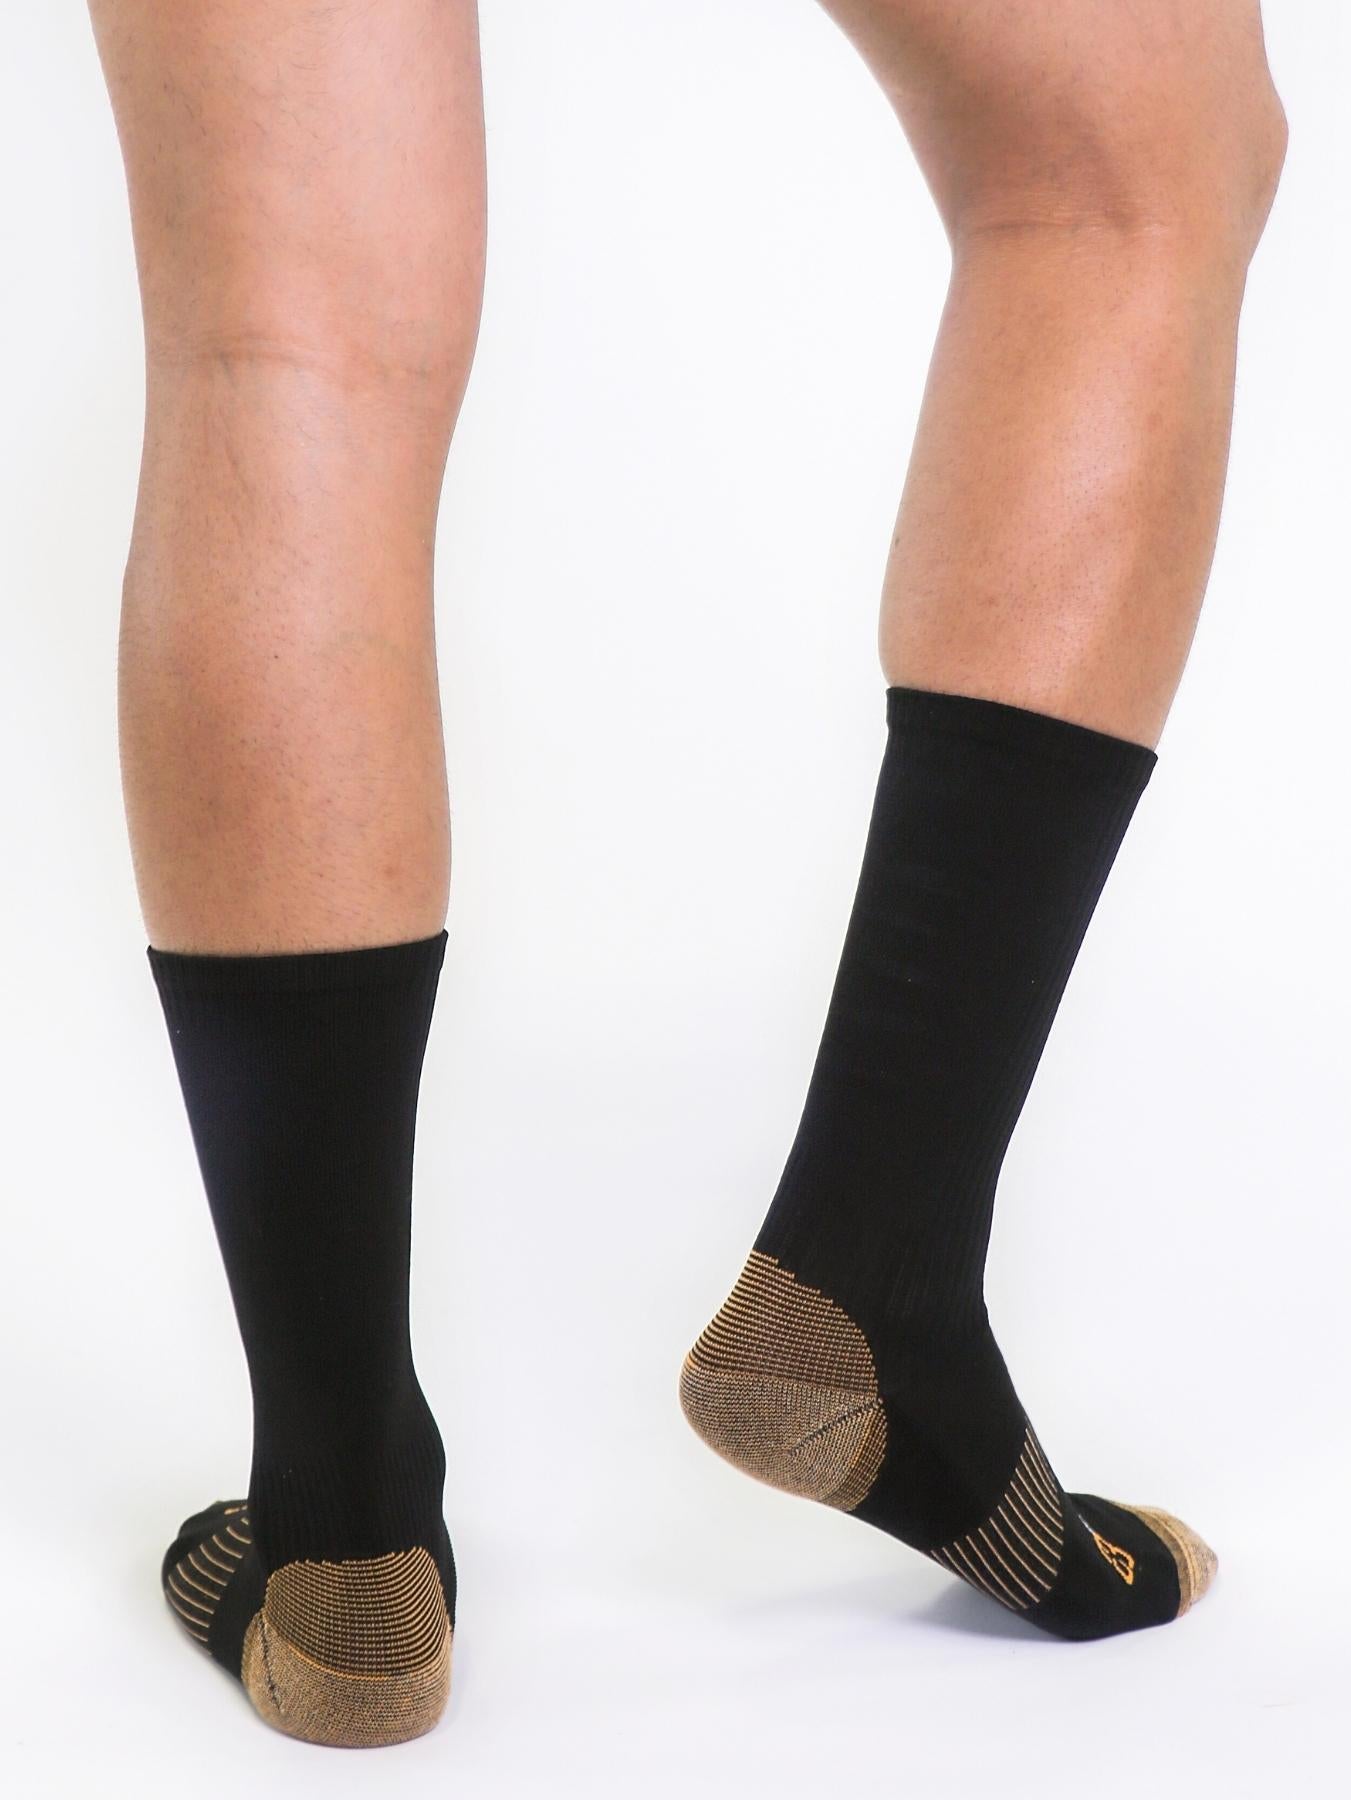 Copper Compression Mid Calf Socks (Black) - Mens